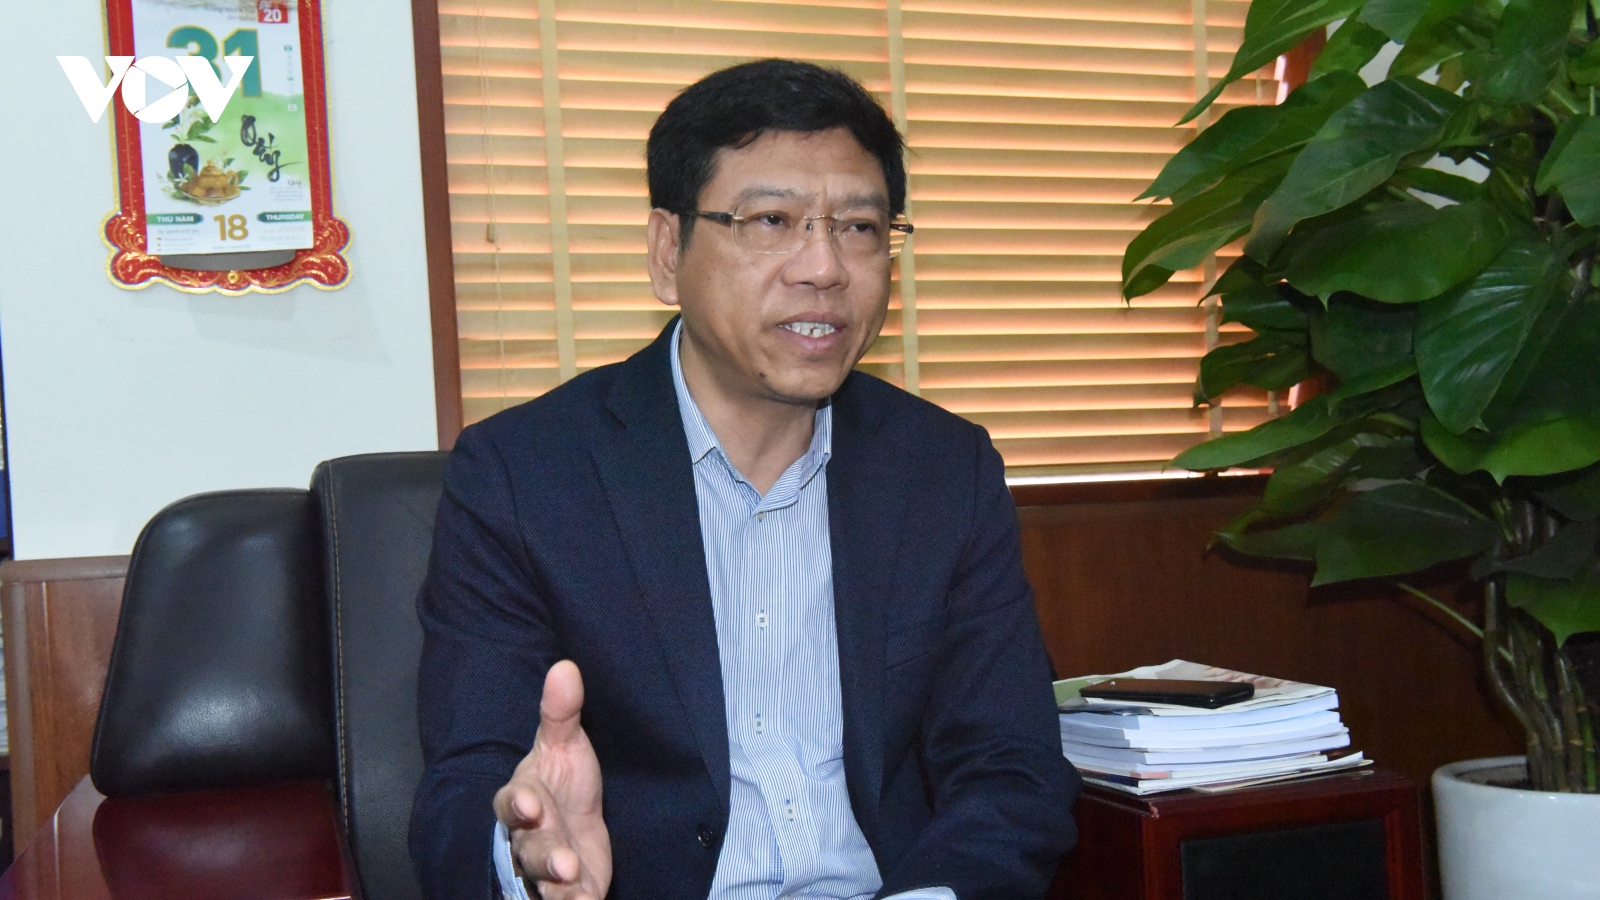 Cục trưởng Cục Hàng hải: Vận tải biển là điểm sáng tăng trưởng kinh tế Việt Nam